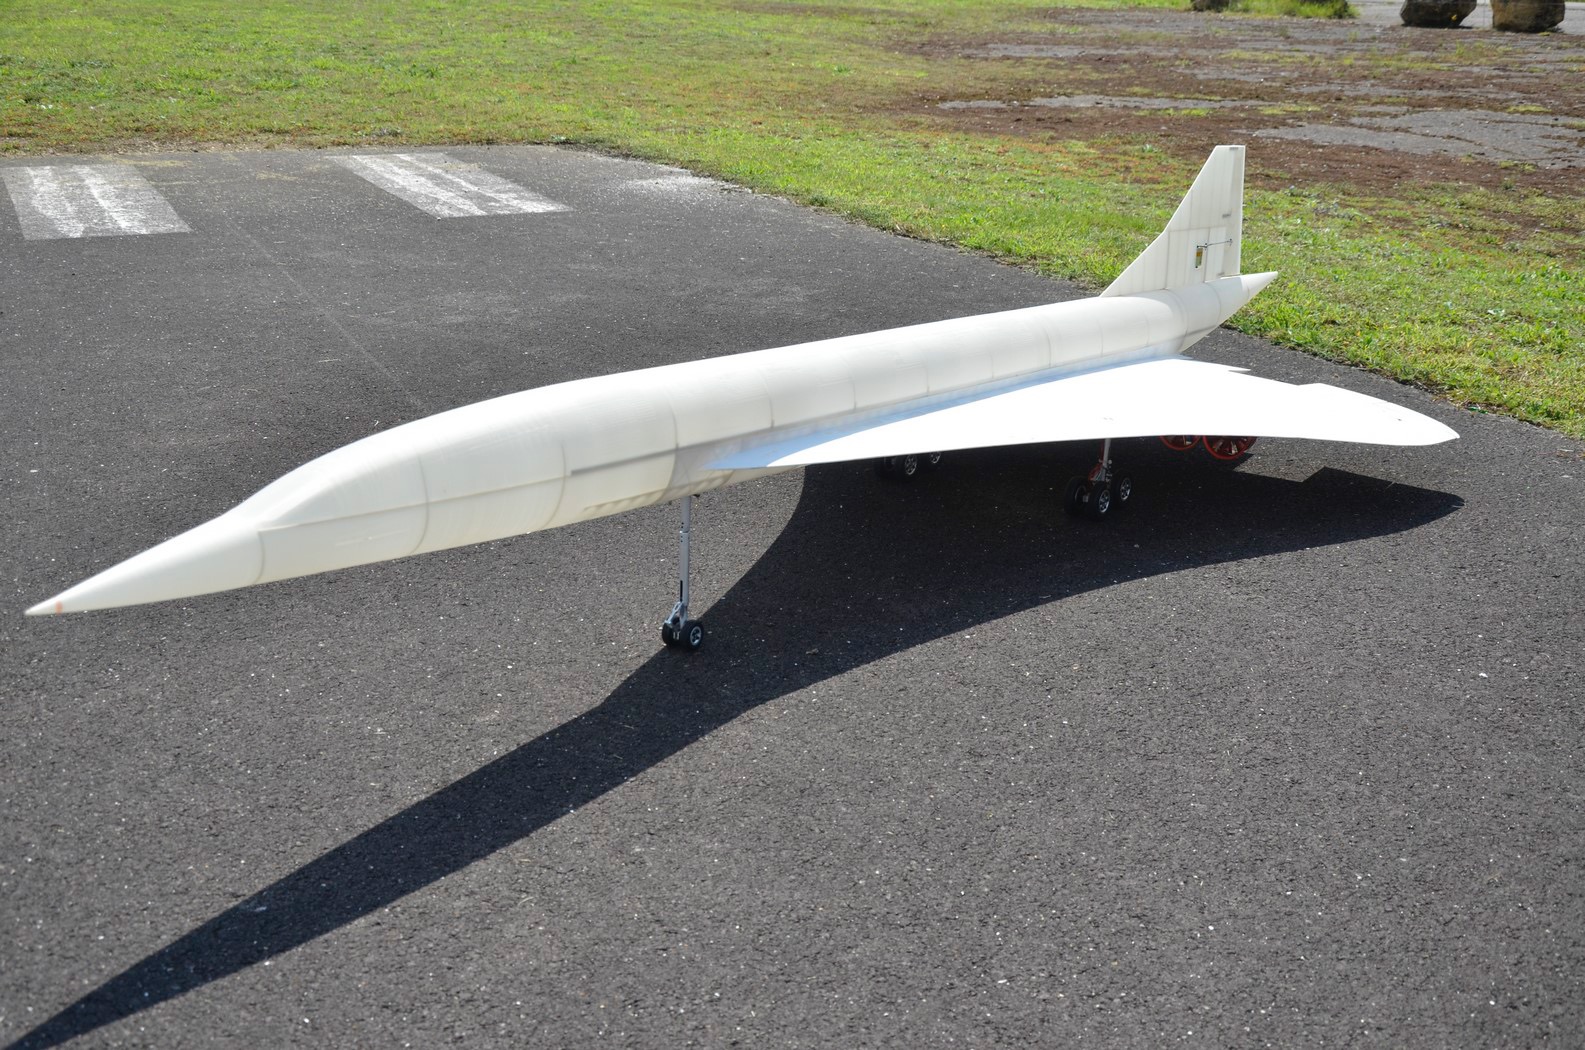 Concorde-essais-de-roulage-le-13-08-21-13